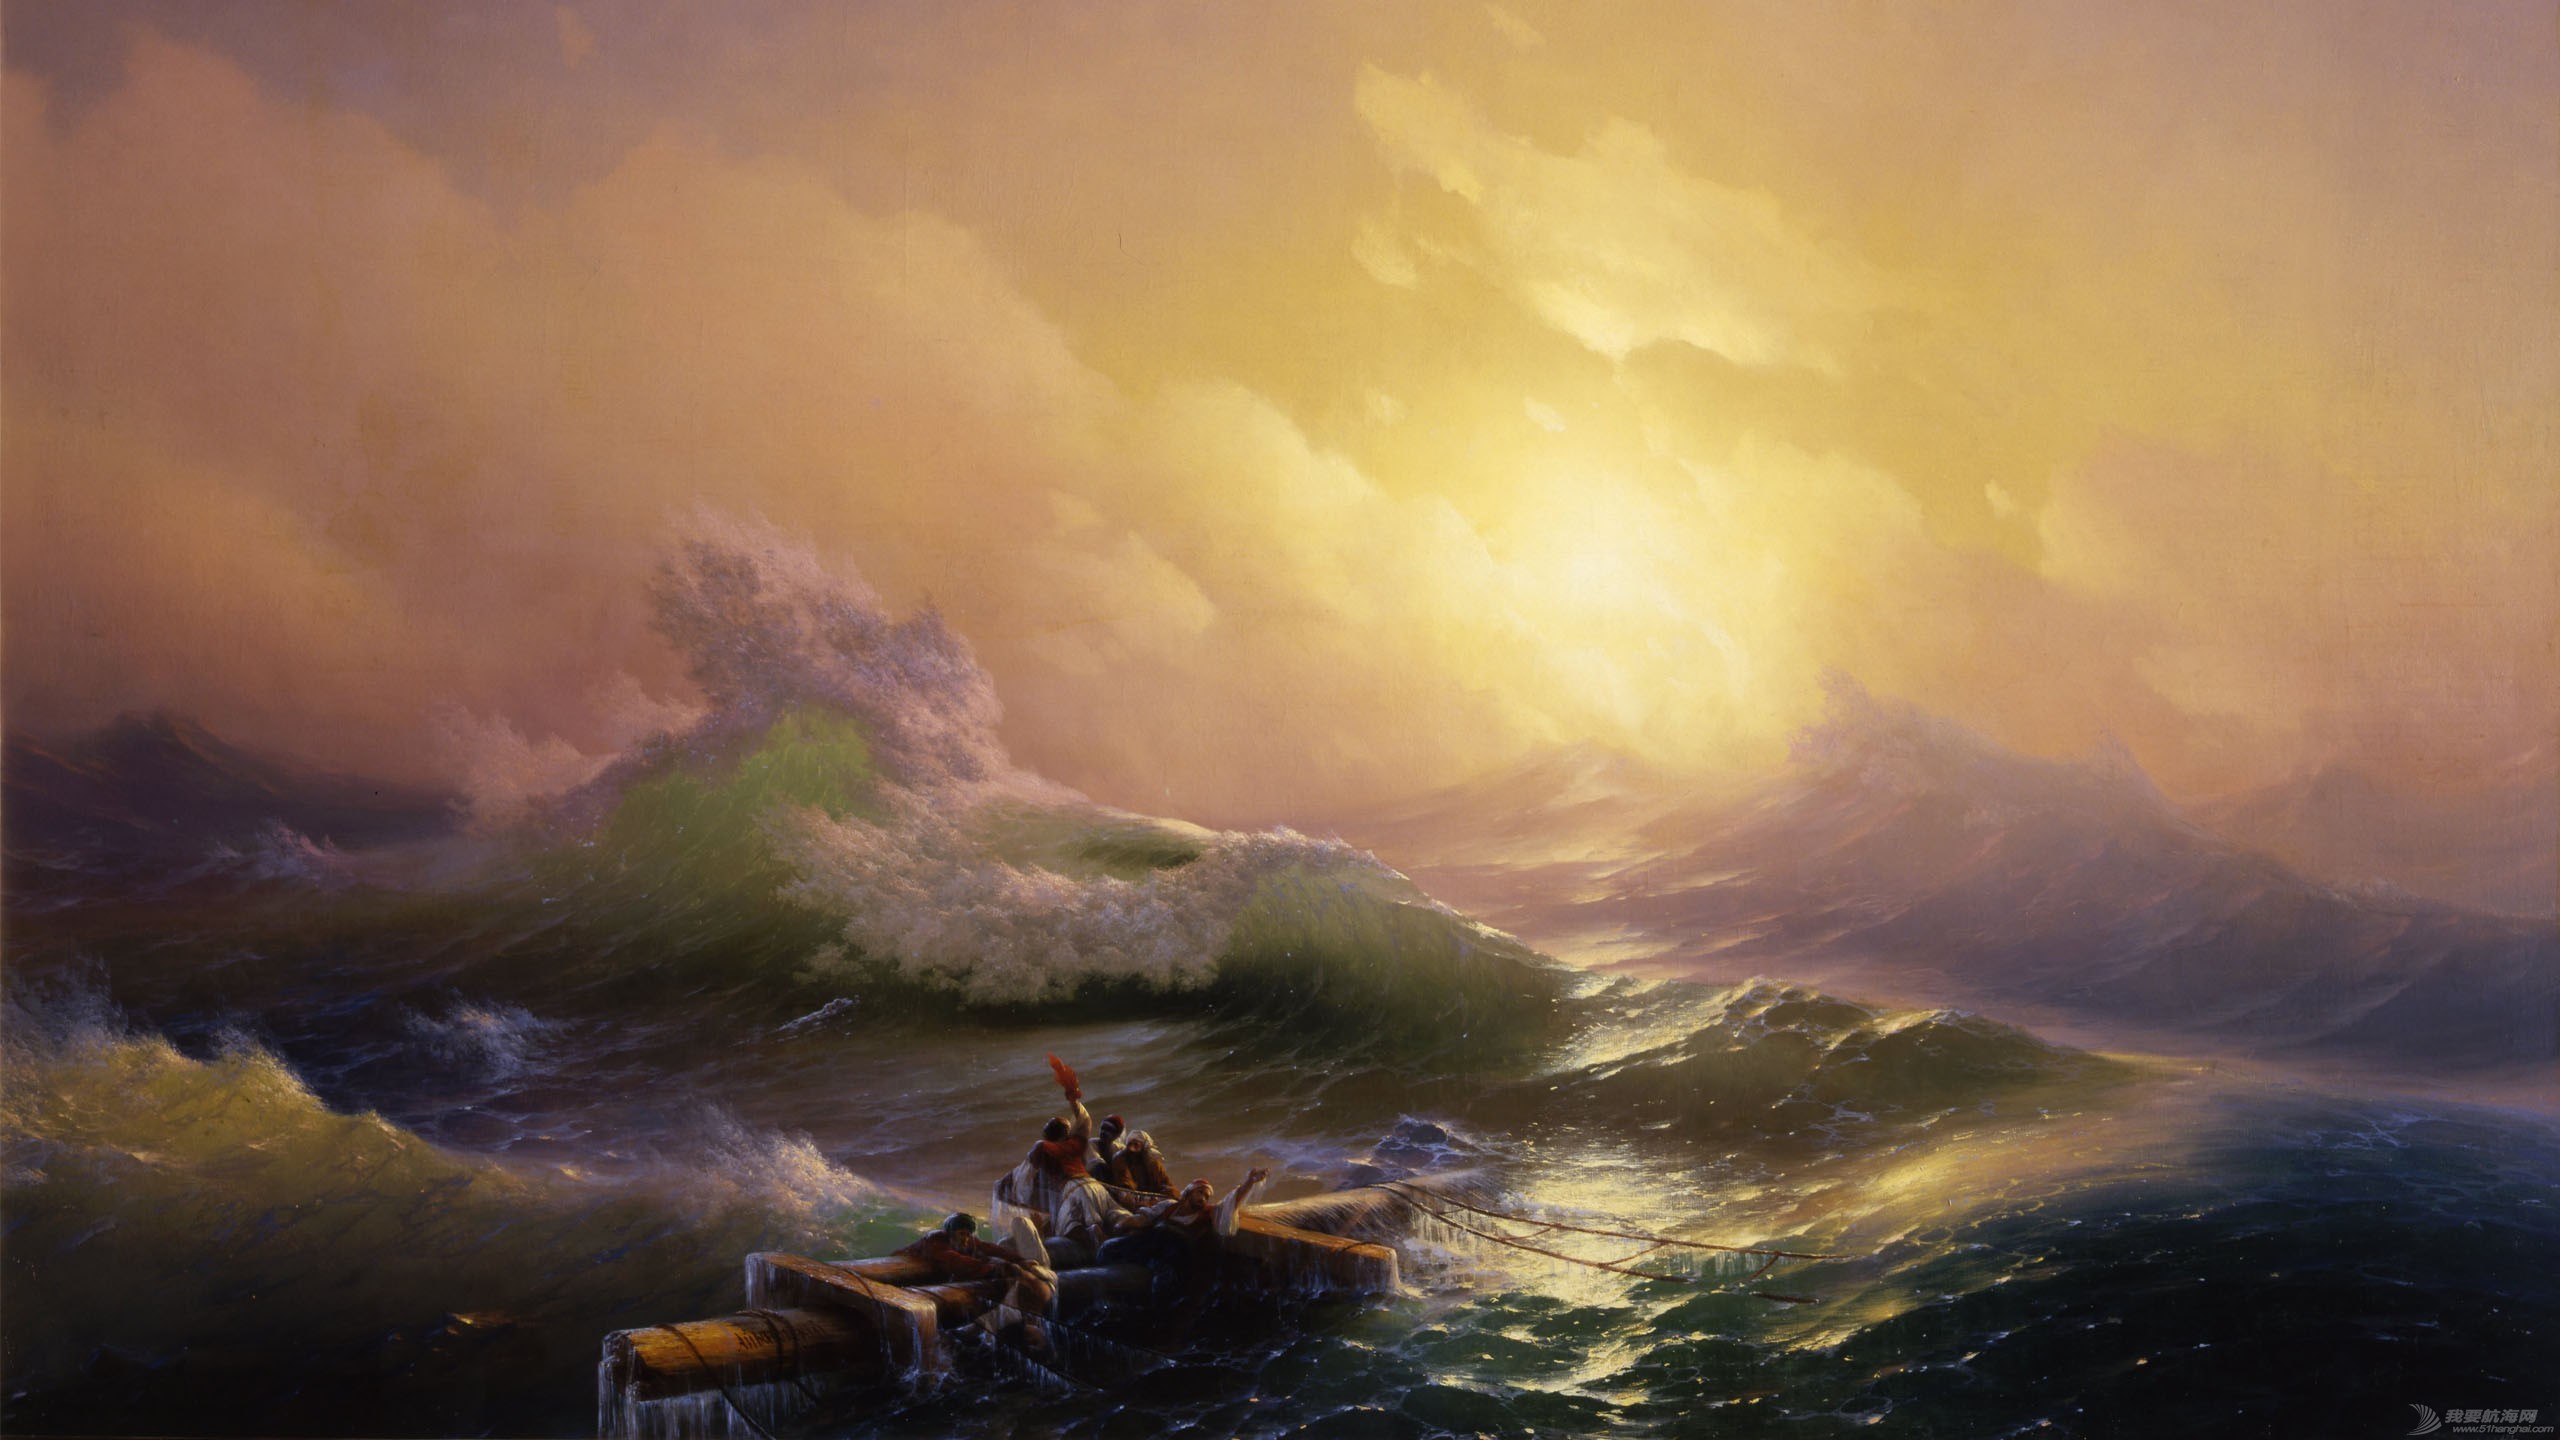 Ivan-Aivazovsky-The-Ninth-Wave-2560x1440-1.jpeg